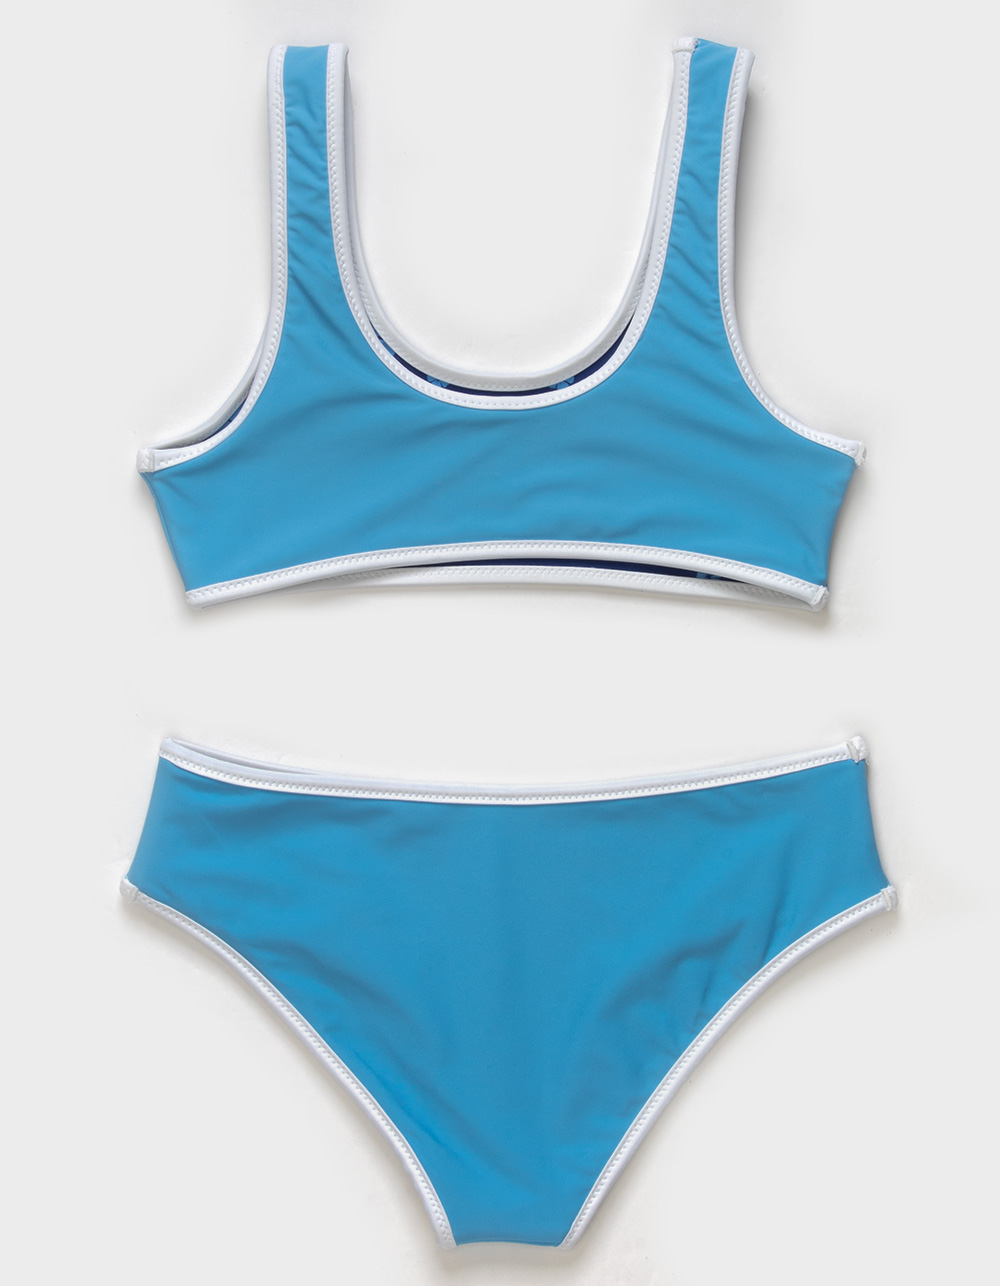 FULL TILT Straight Bralette Girls Bikini Set - BLUE COMBO